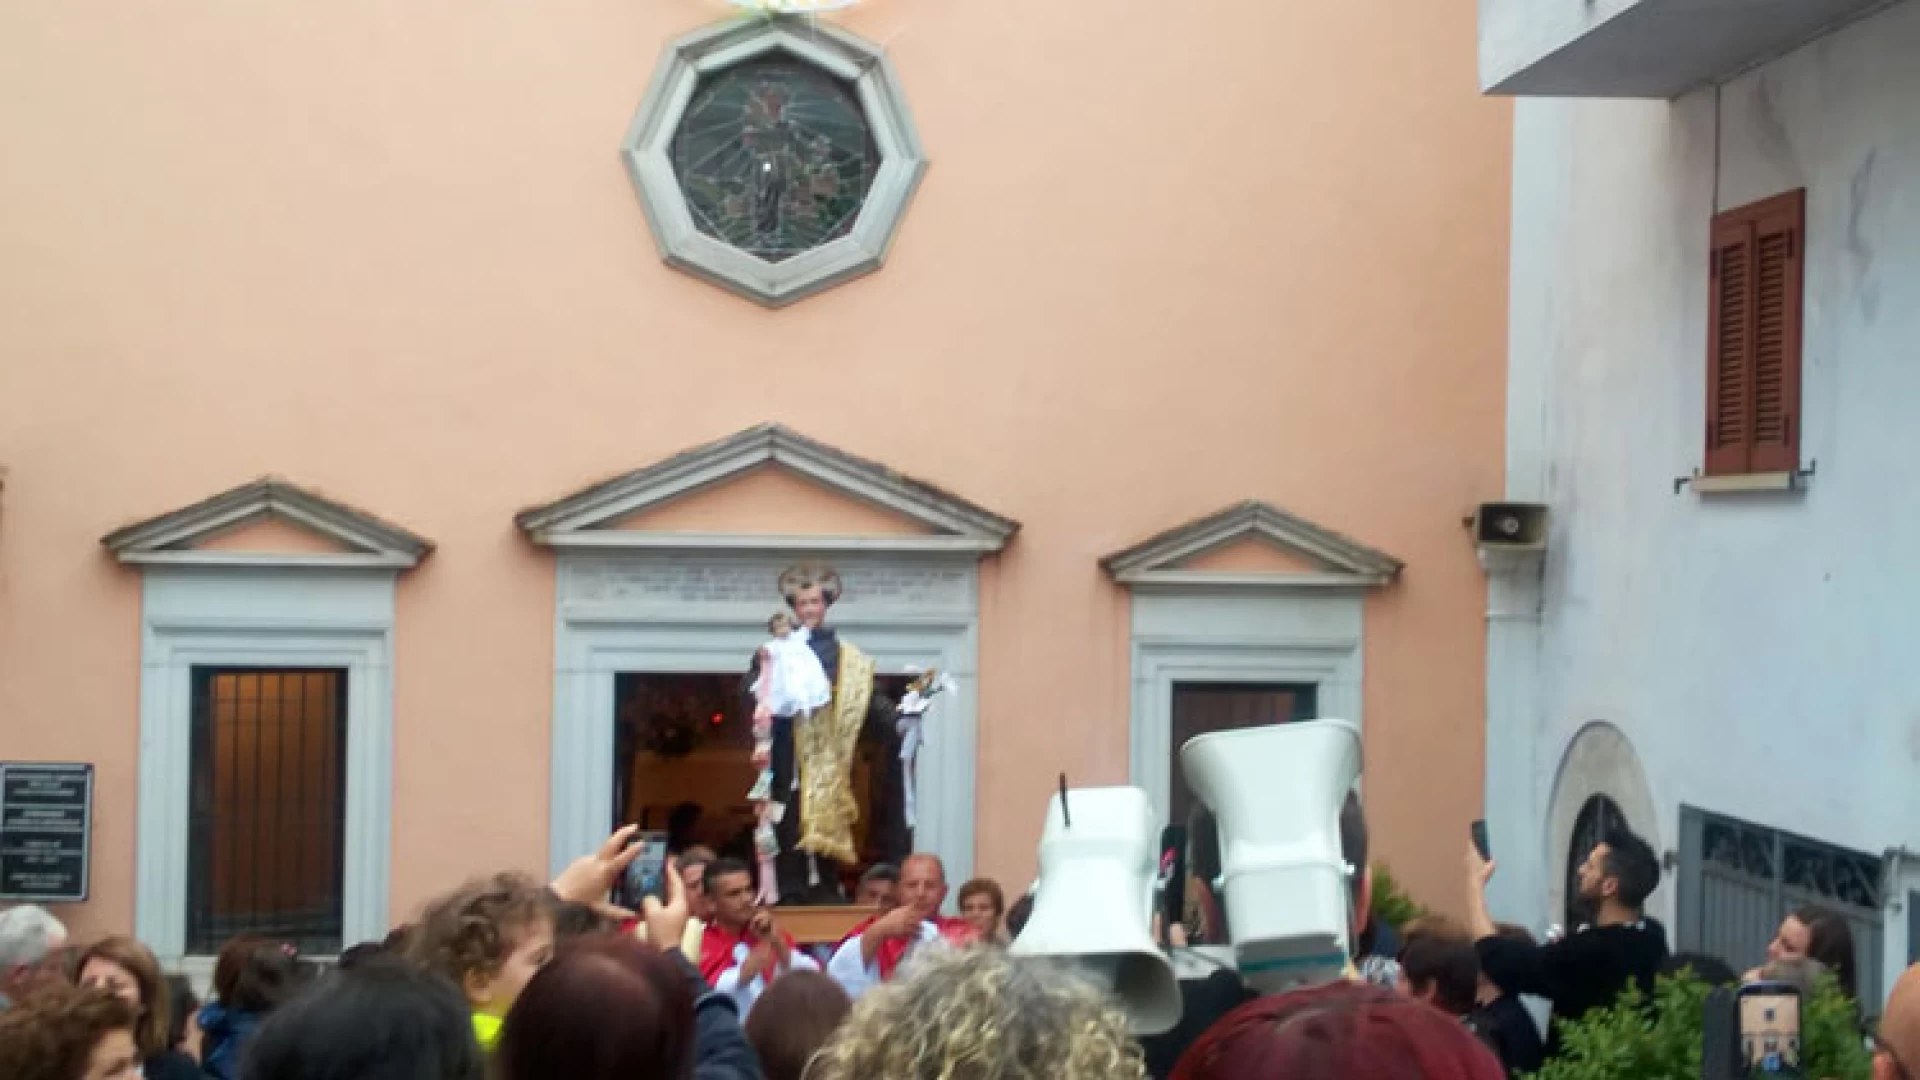 Colli a Volturno: fede, tradizione e musica si uniscono nei solenni festeggiamenti dedicati a Sant’Antonio da Padova. Successo per i Cugini di Campagna.